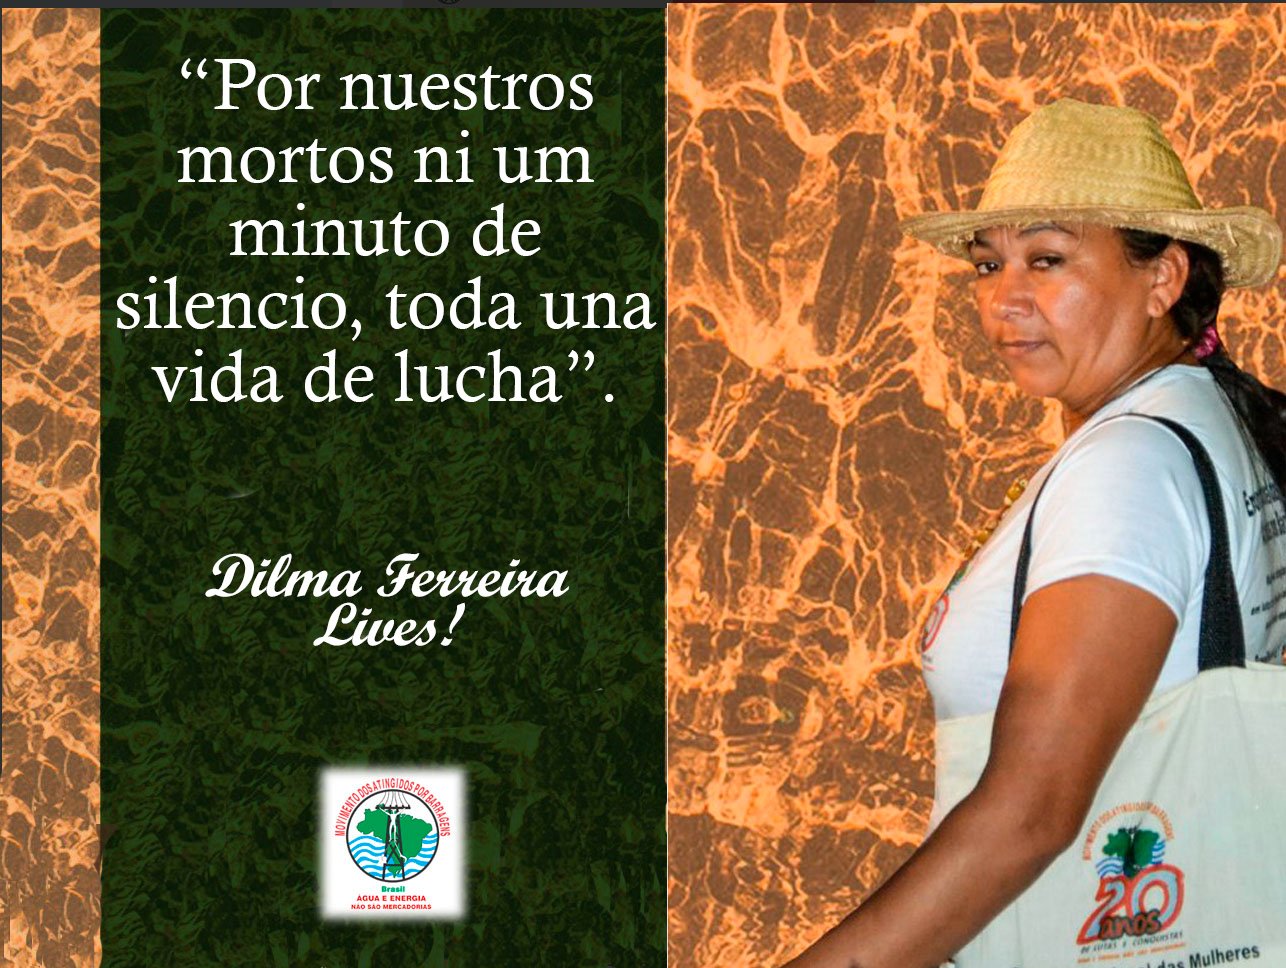 Pronunciamiento sobre el asesinato de Dilma Ferreira Silva, lideresa del Movimiento de Afectados por Represas de Brasil